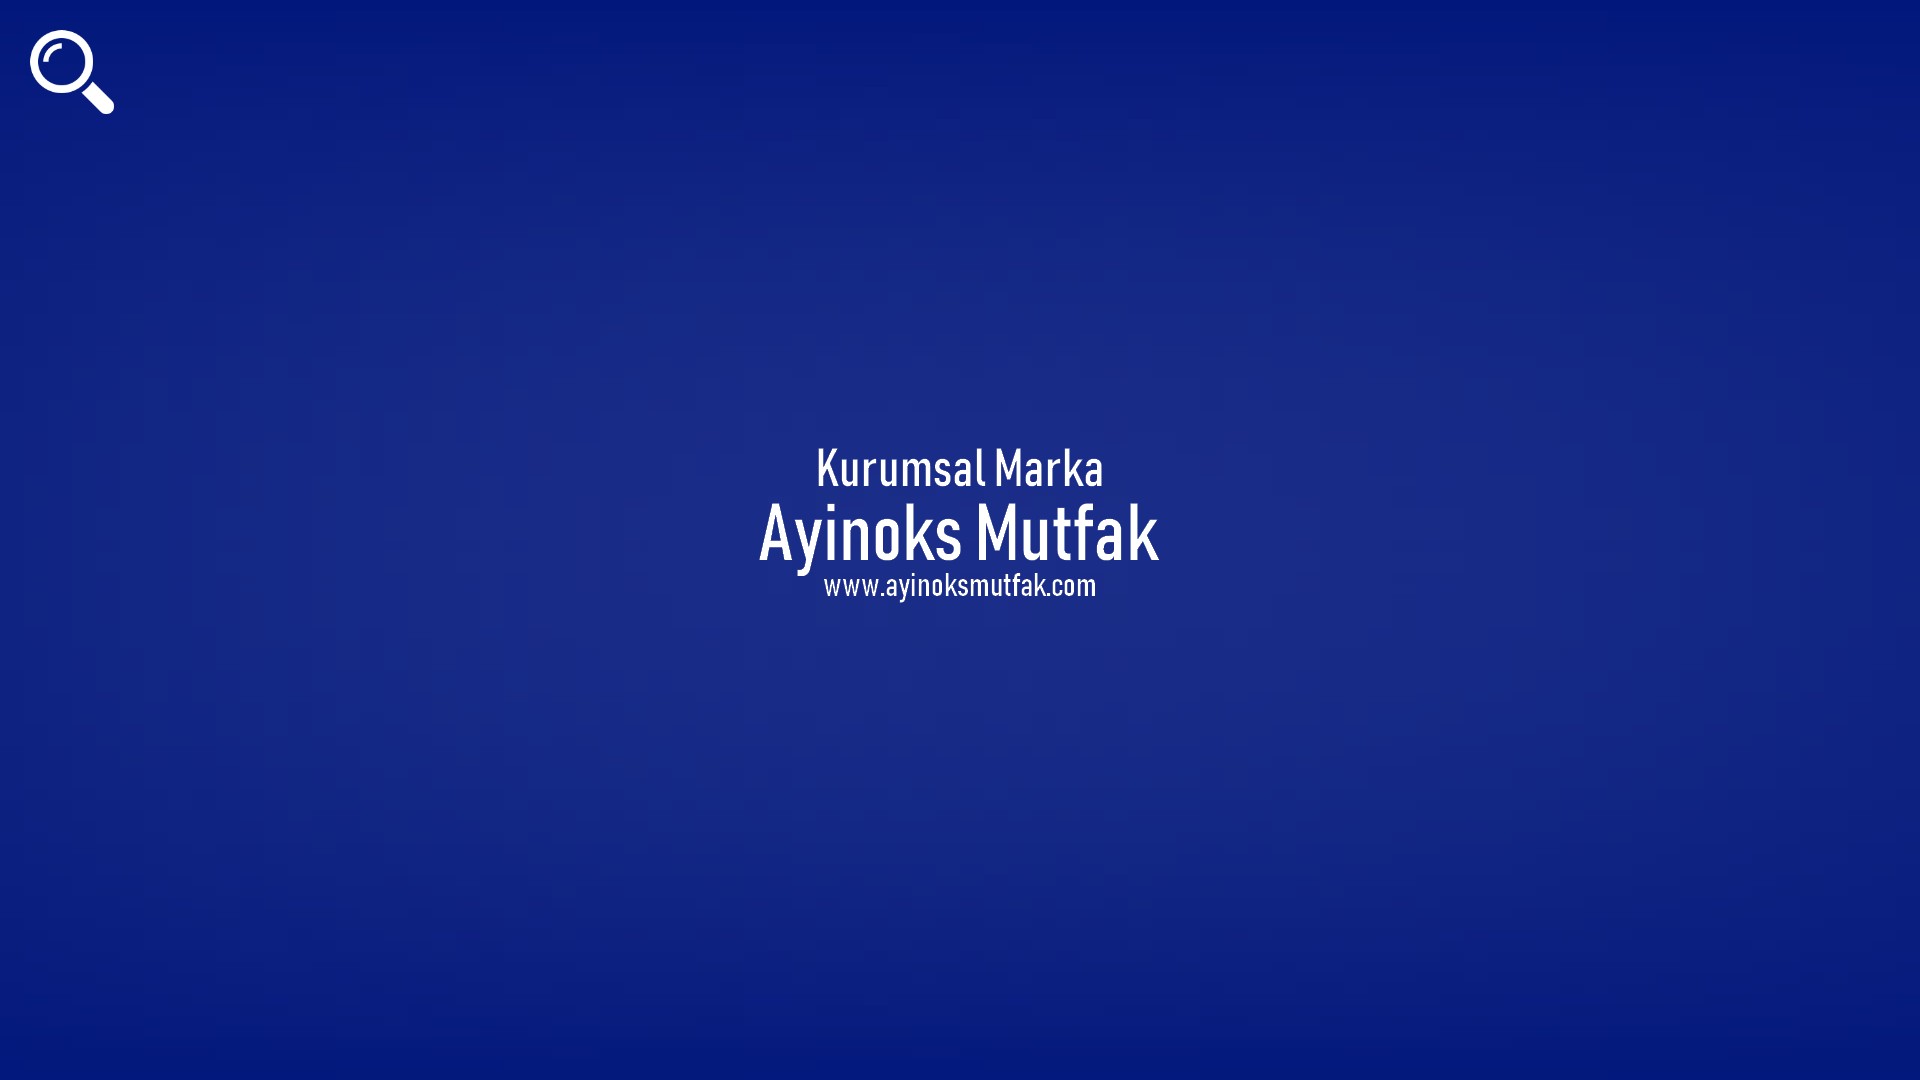 Ayinoks Mutfak başlıklı içeriğin resmi